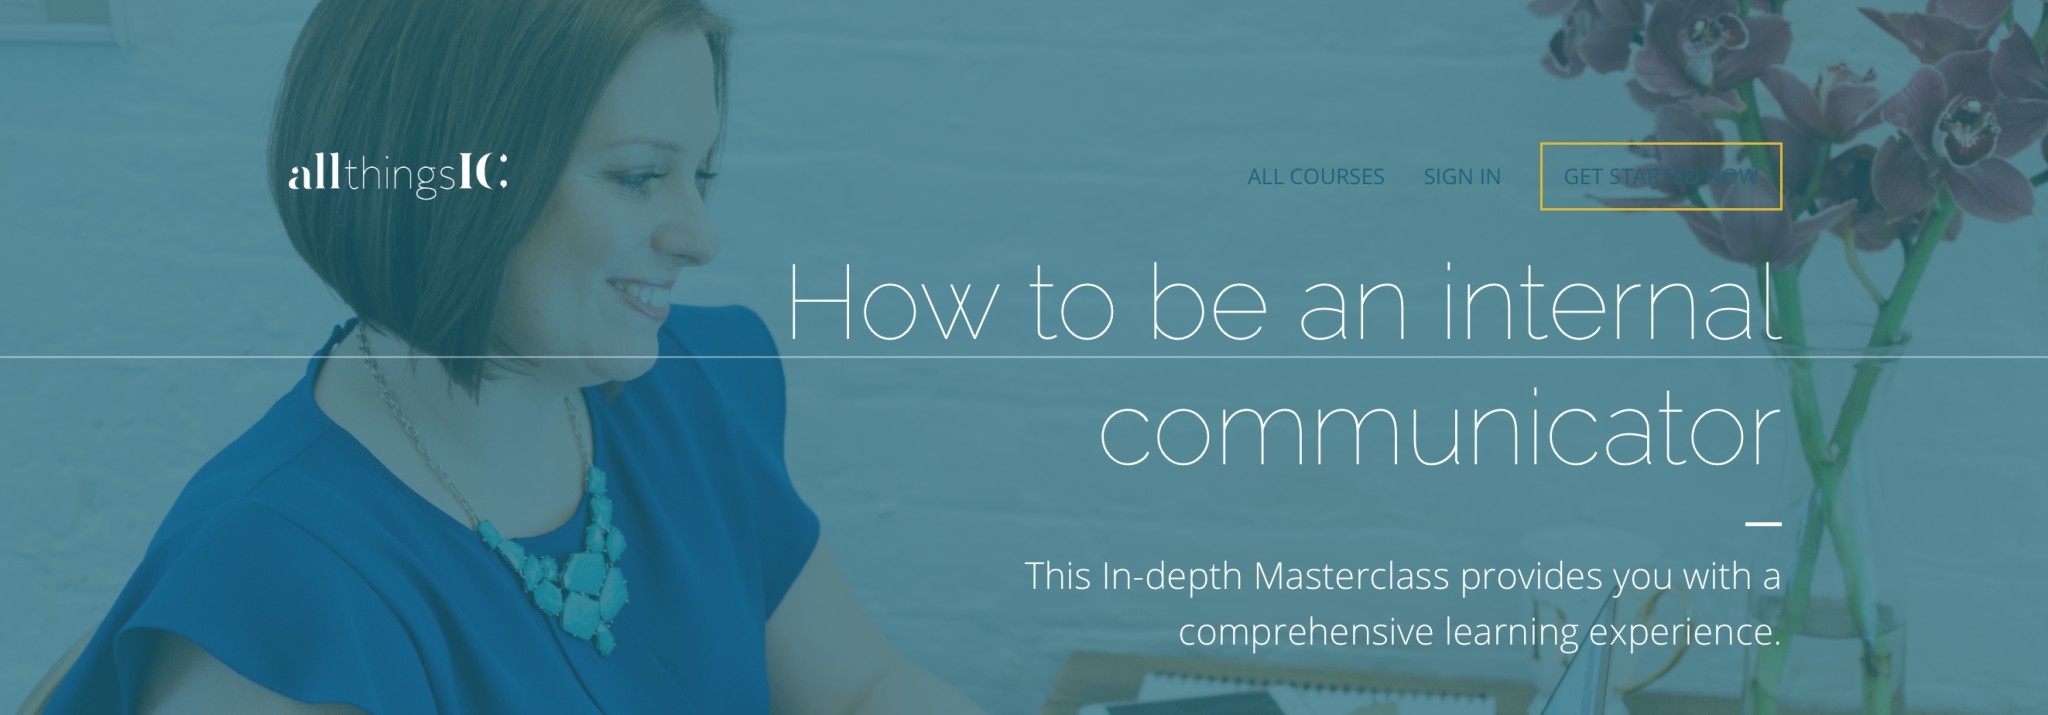 How to be an internal communicator online masterclass